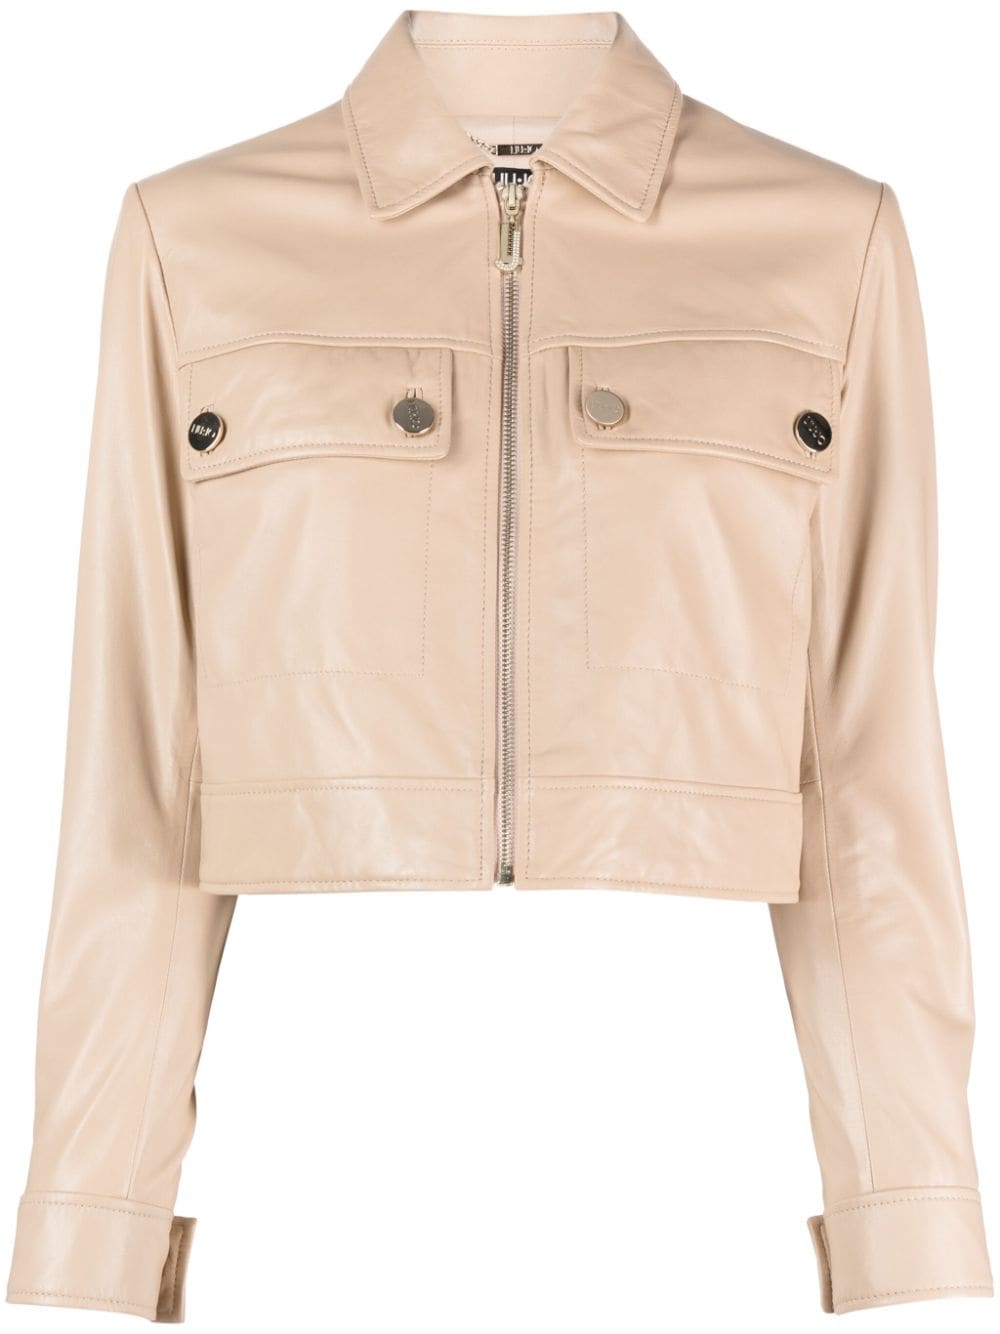 Liu •jo Cropped Leather Jacket In Neutrals